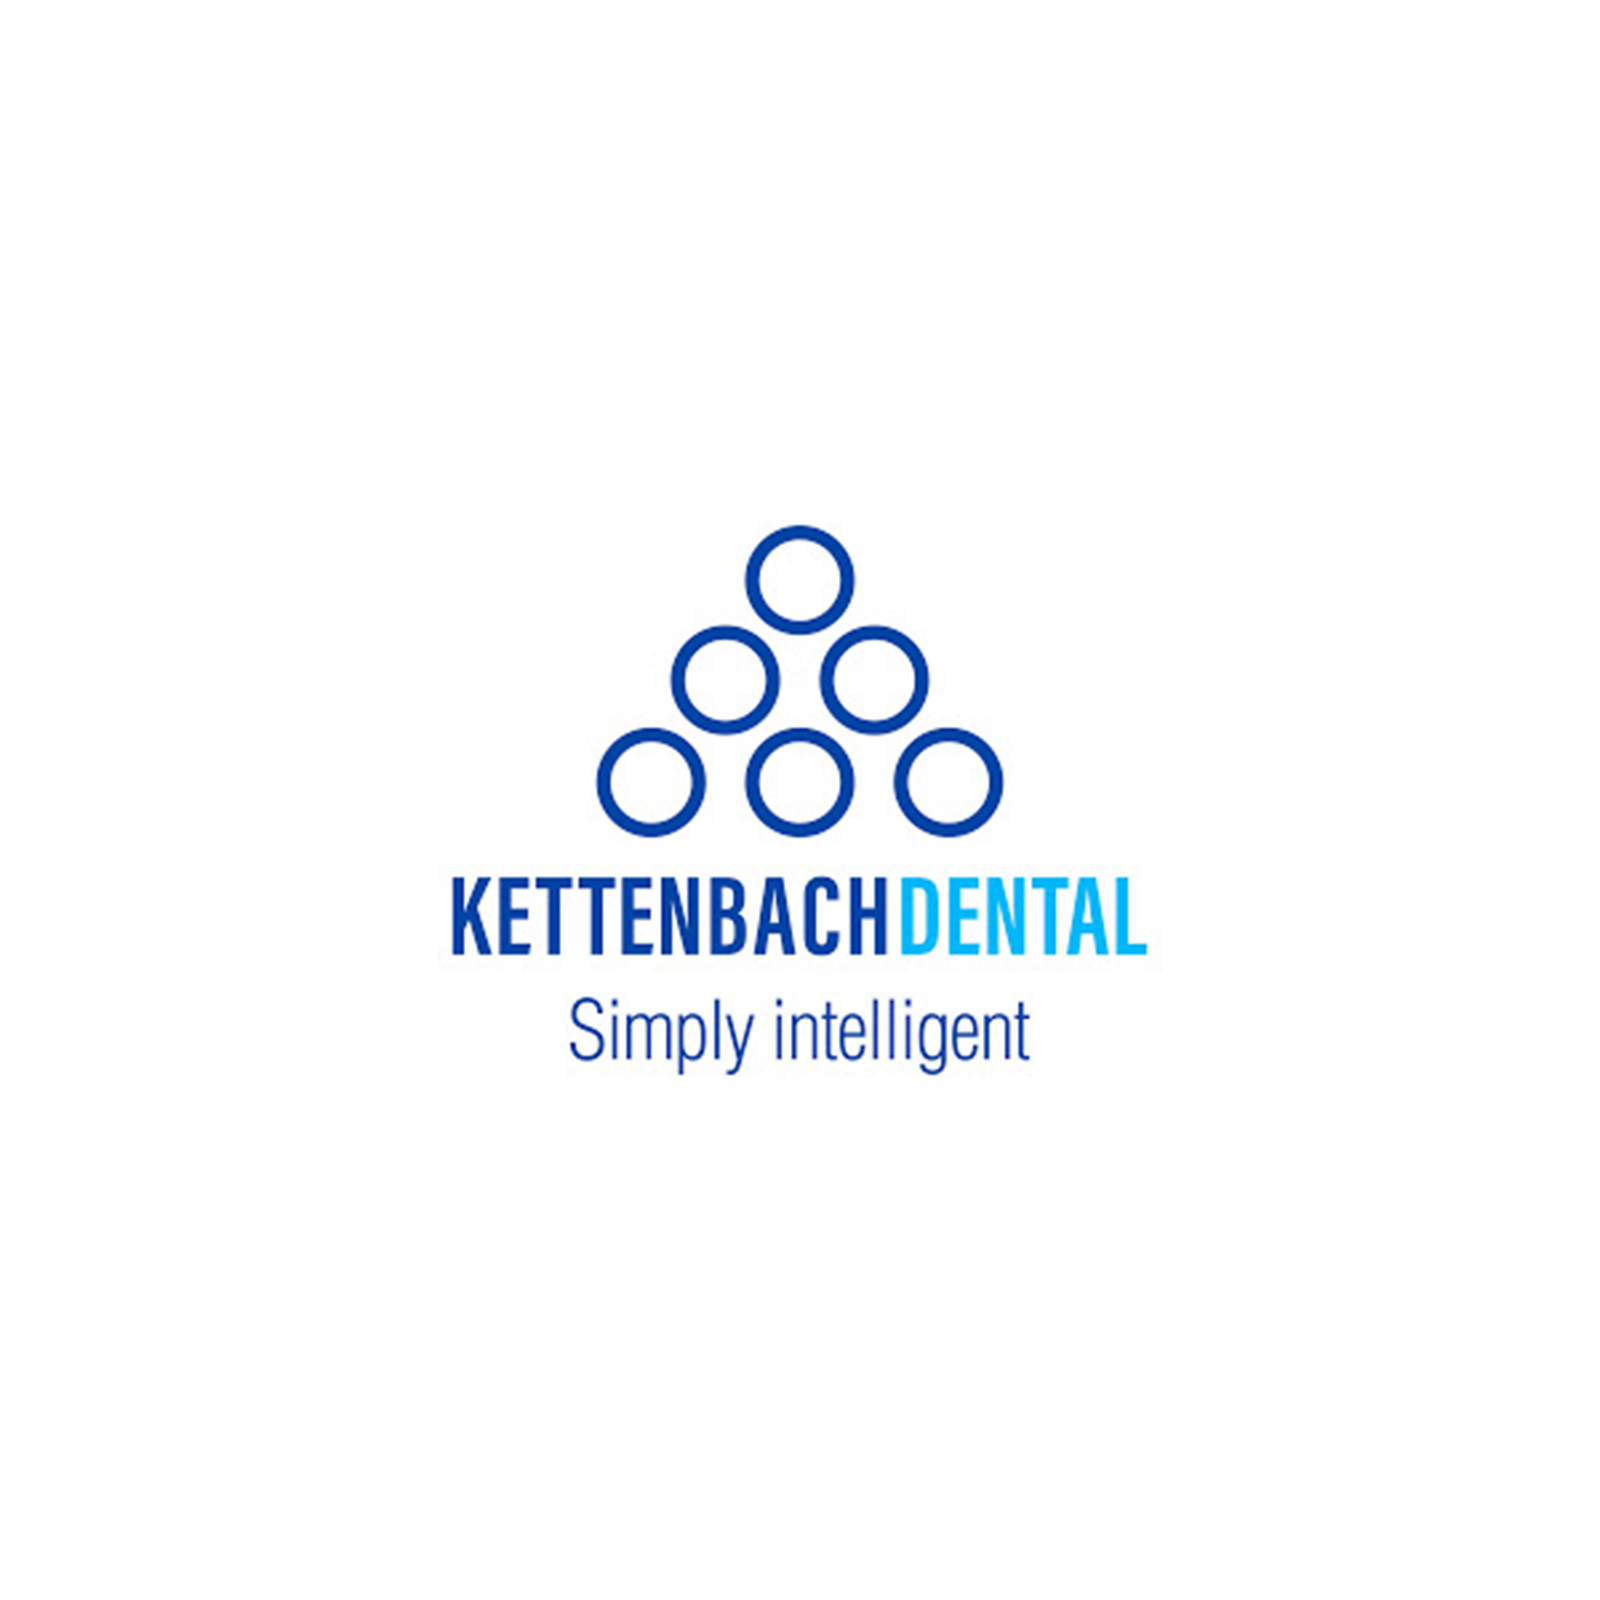 Kettenbach GmbH&Co KG [31106]